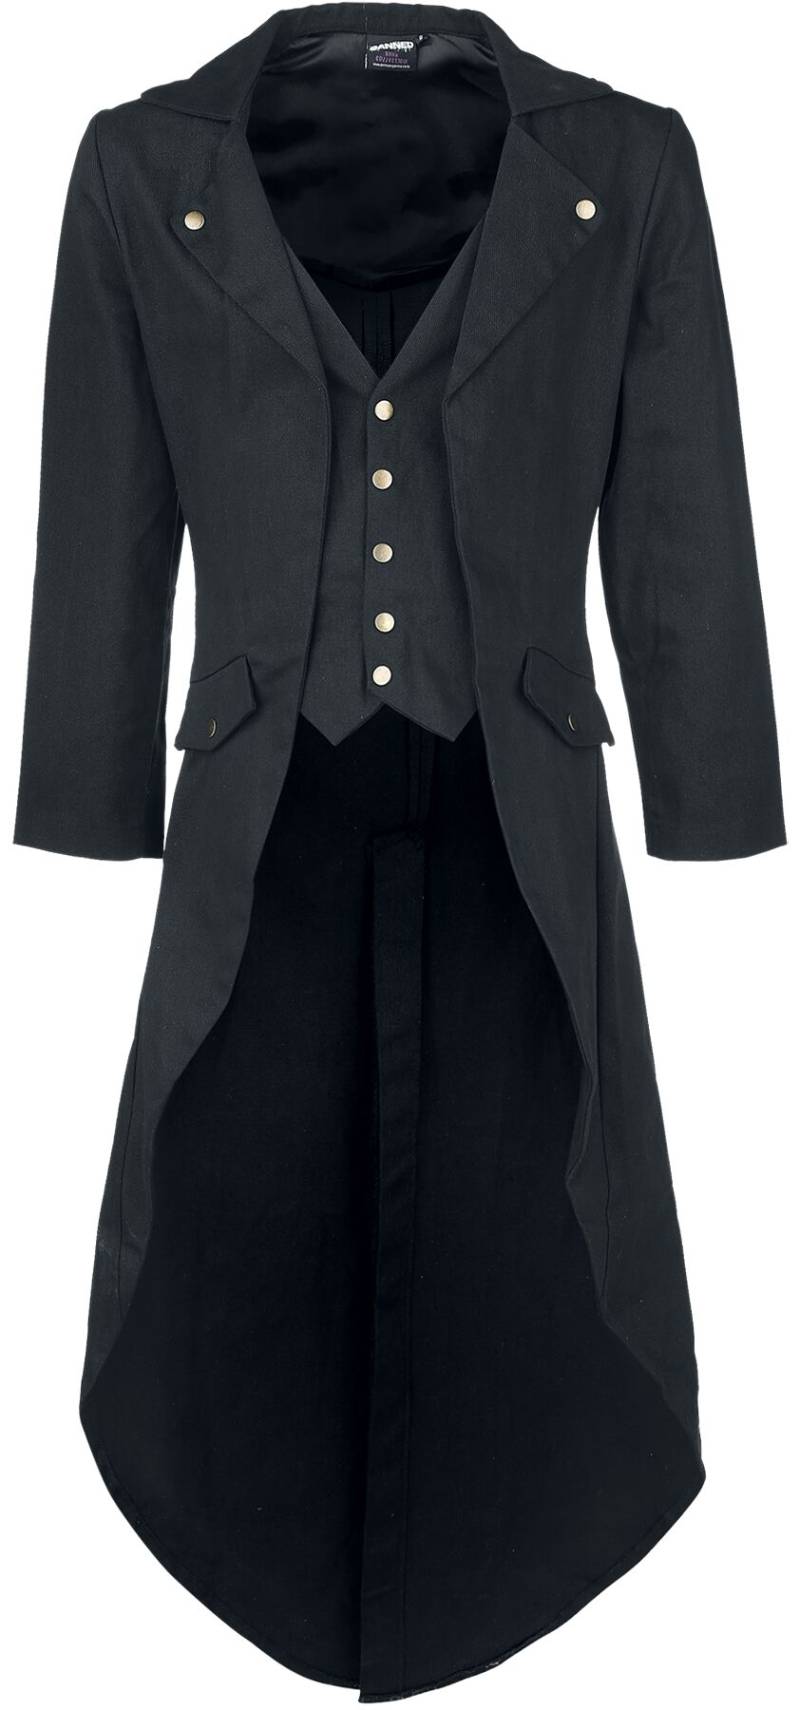 Banned Alternative - Gothic Militärmantel - Dovetail Coat - S bis 5XL - für Männer - Größe 5XL - schwarz von Banned Alternative